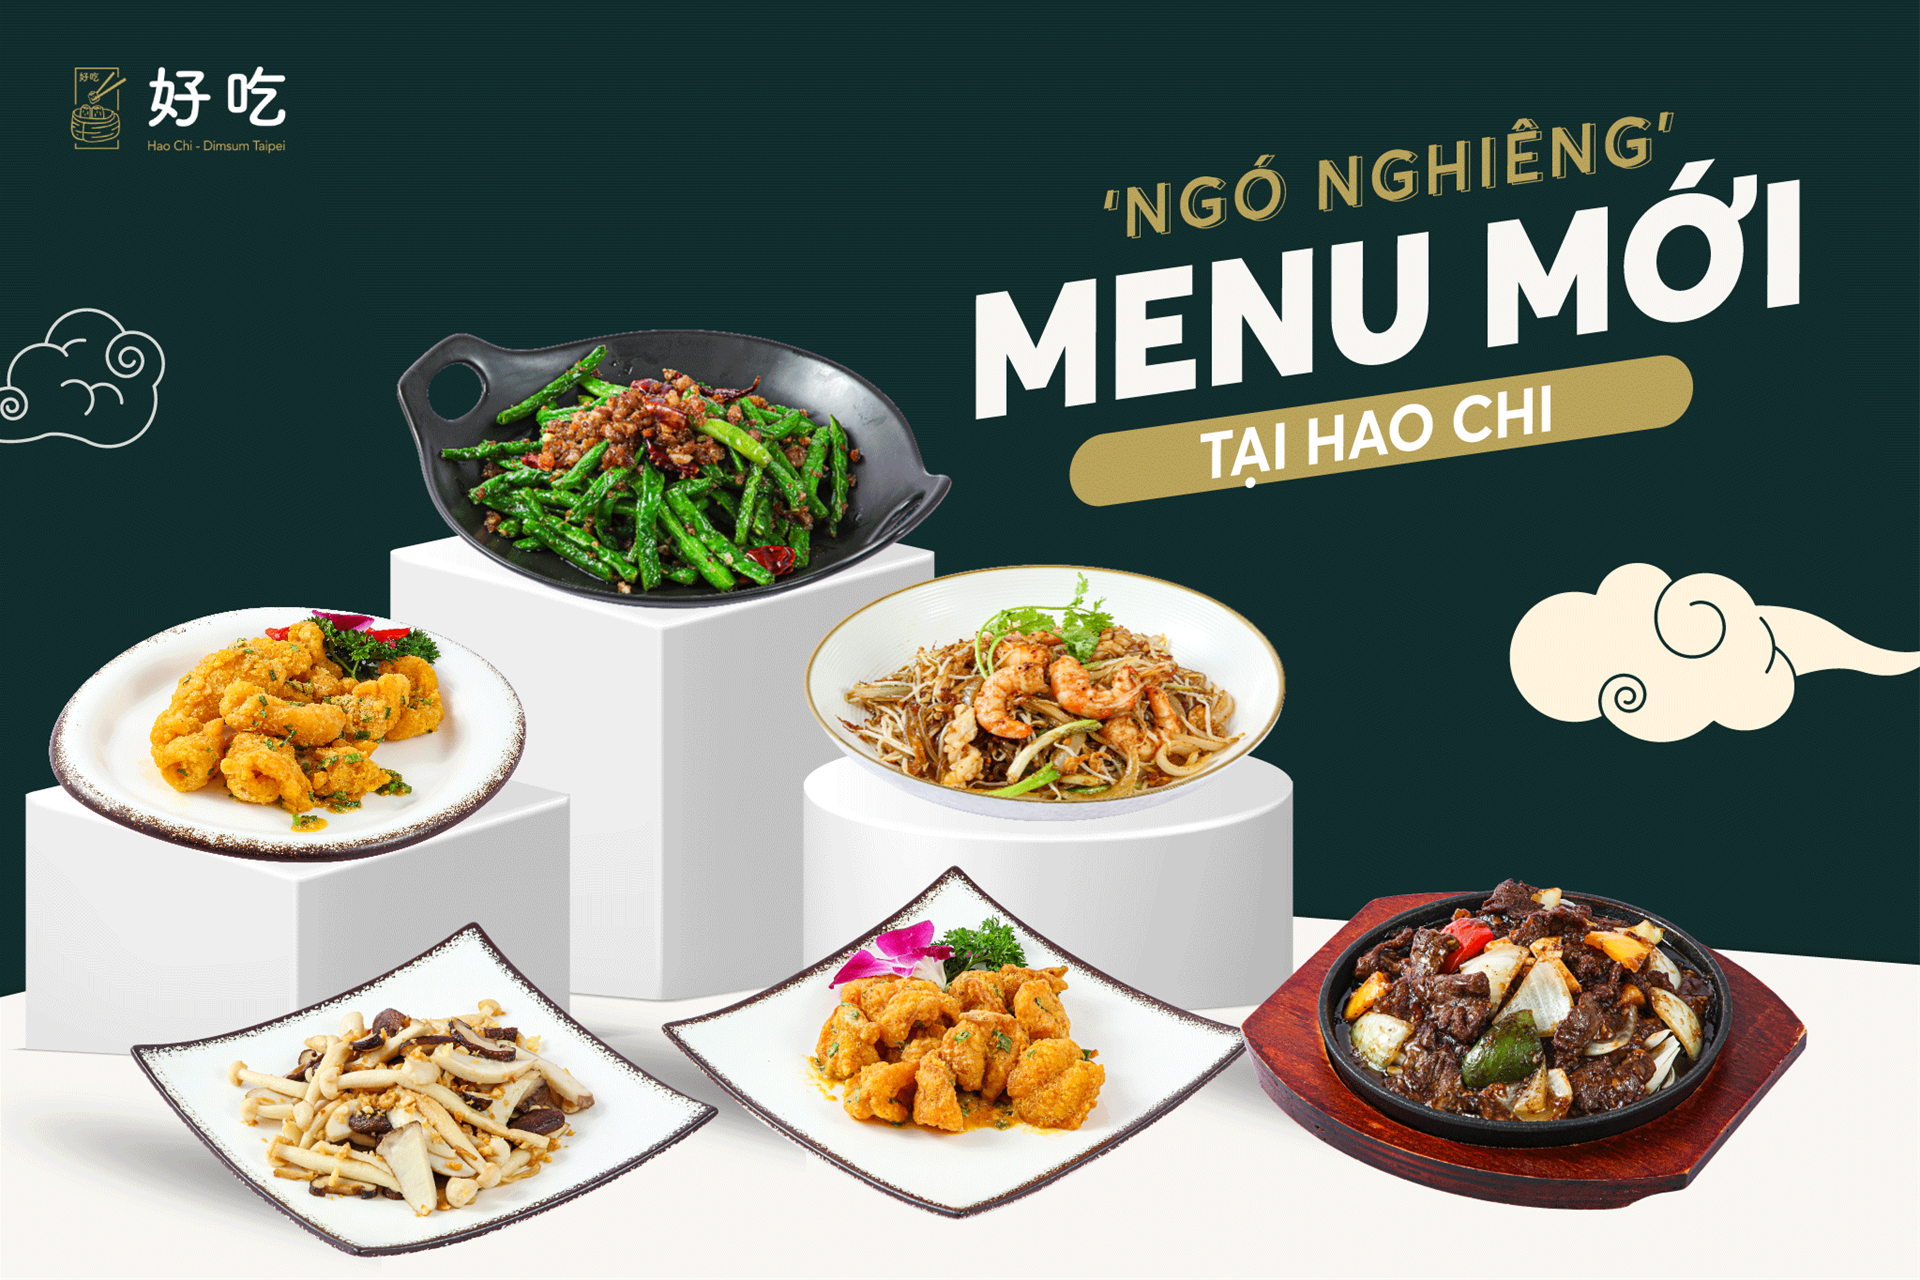 ‘Ngó nghiêng’ ngắm menu mới nhà Hao Chi